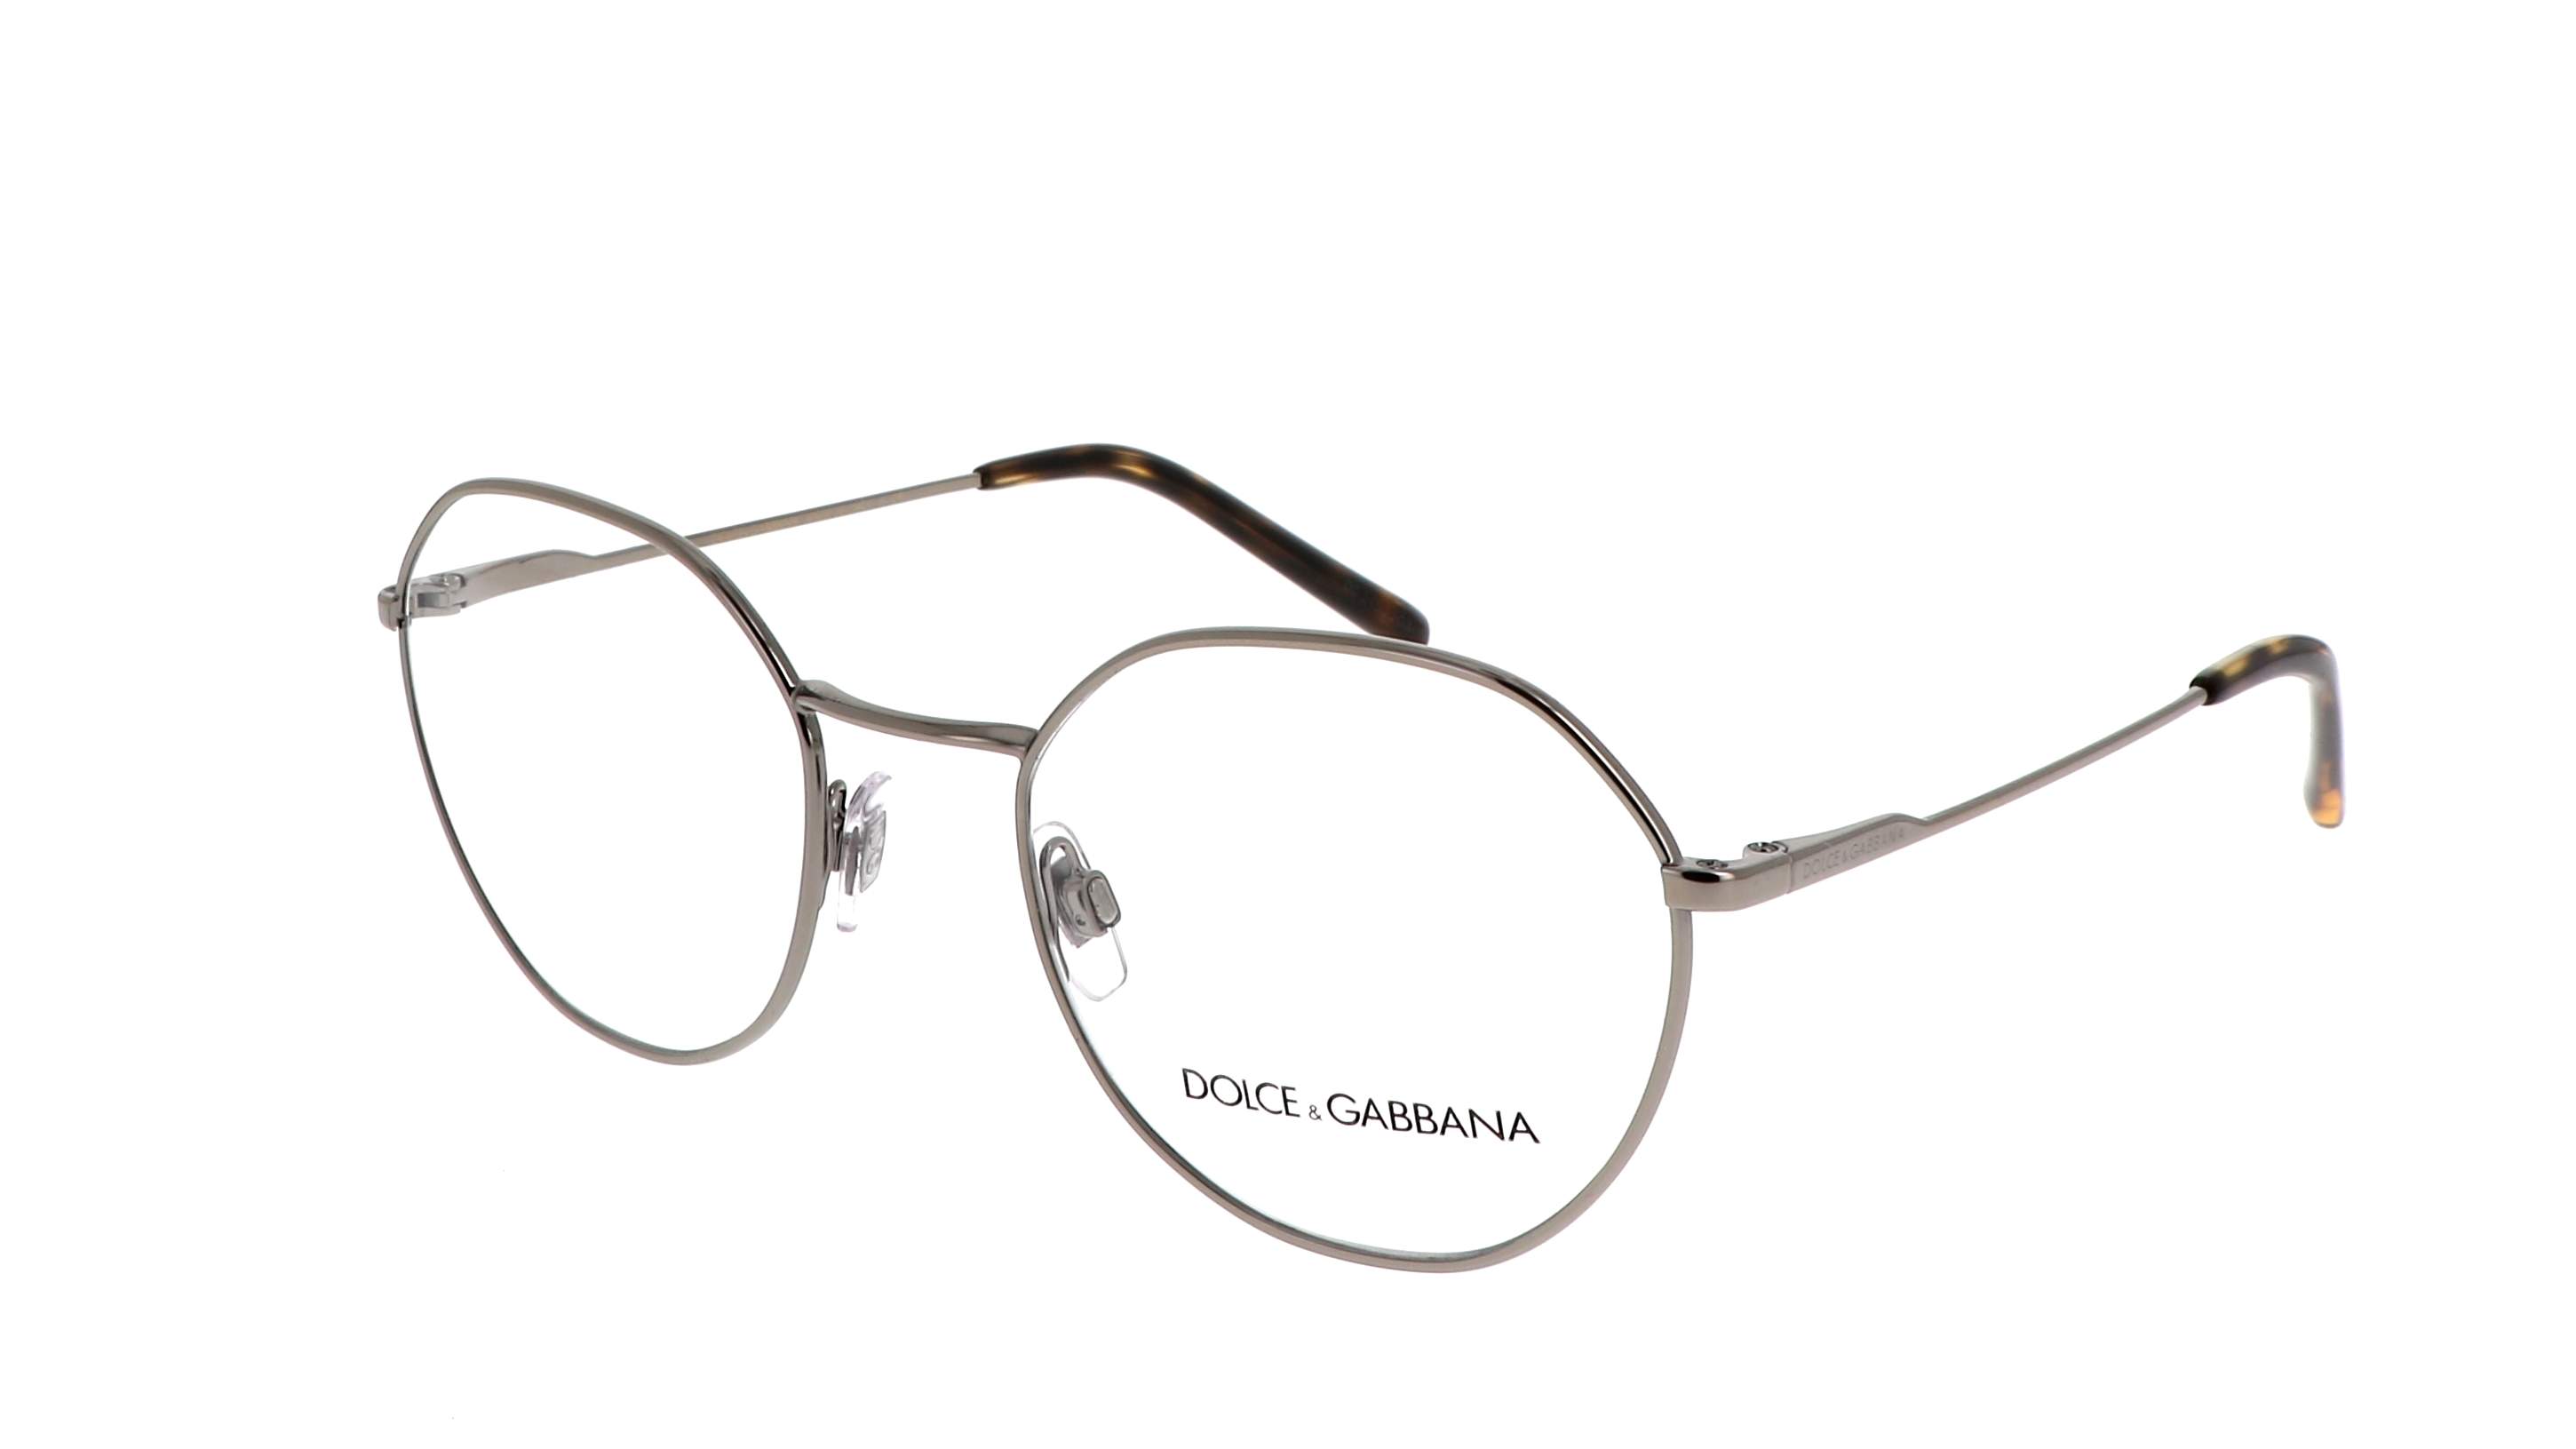 dolce gabbana men's eyeglasses